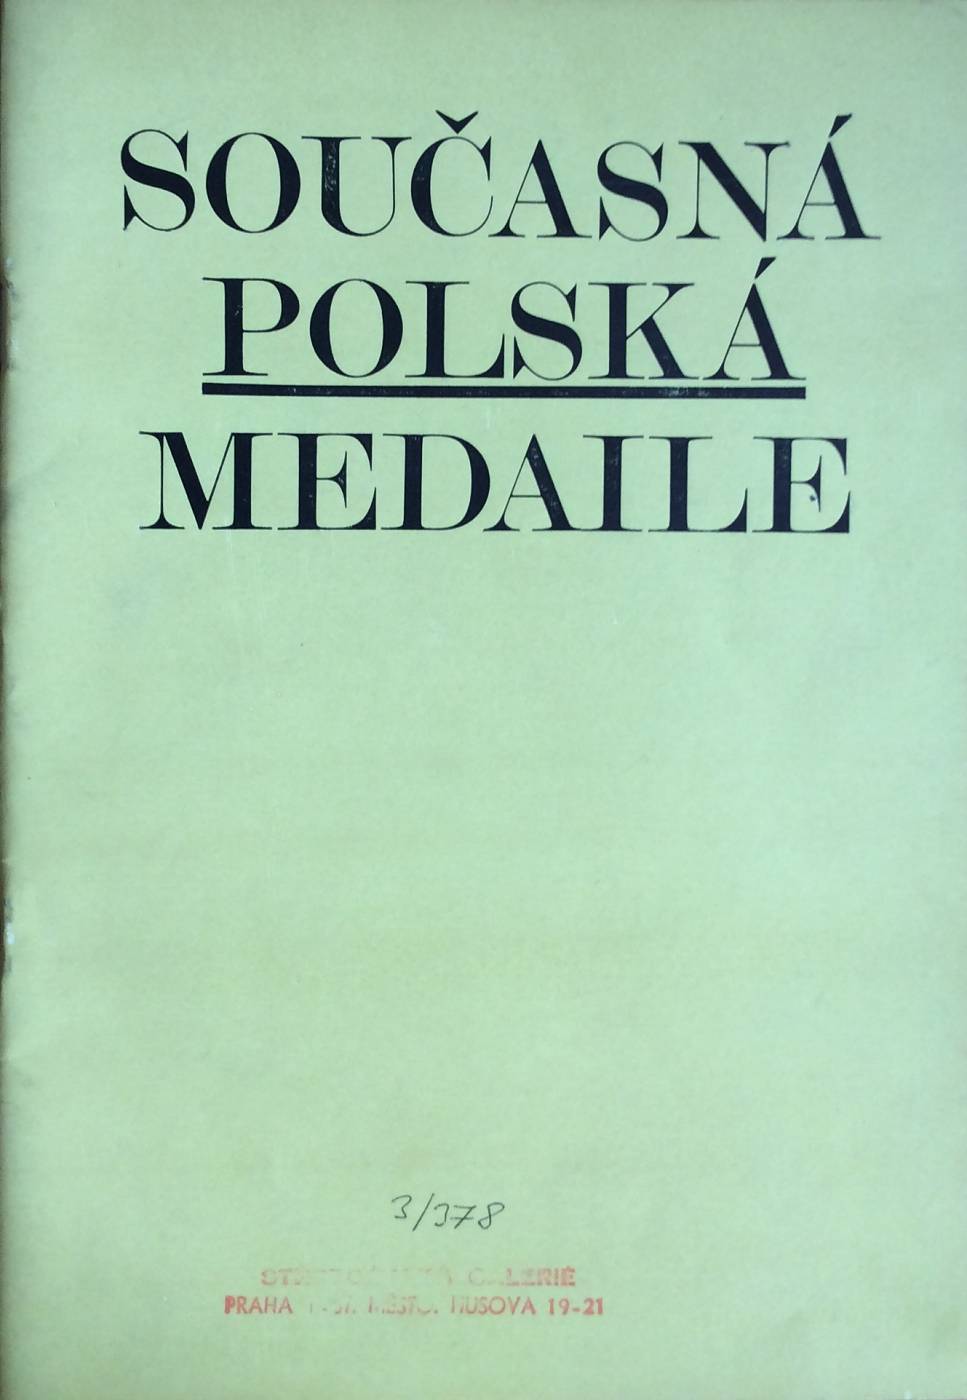 Současná polská medaile